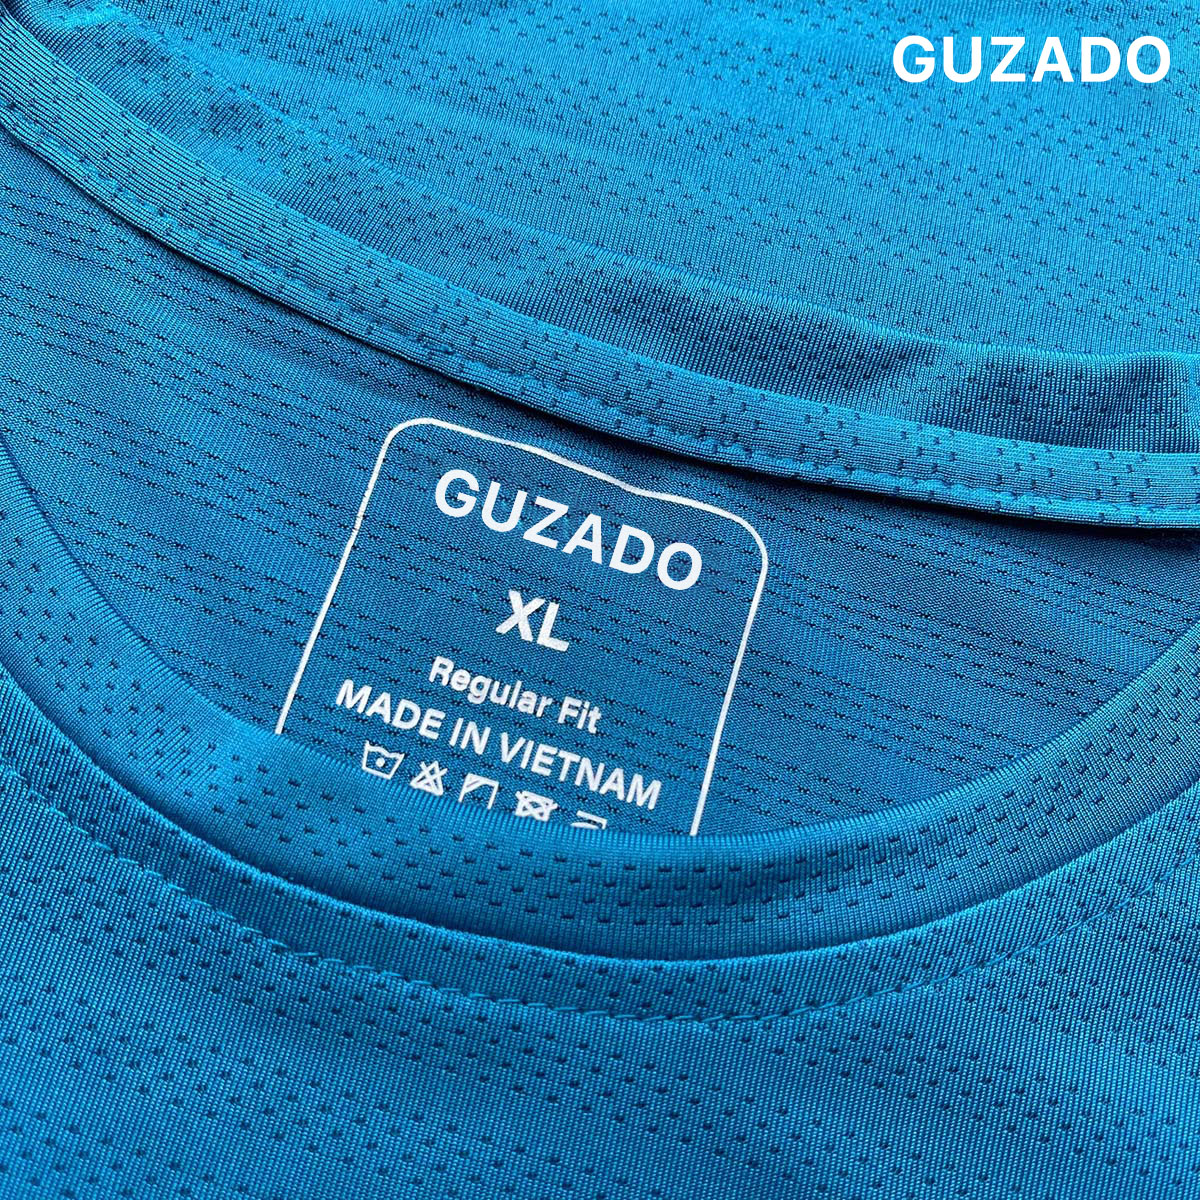 Bộ quần áo thể thao nam cổ tròn Guzado Chất Coolmax thể thao vận động thoải mái BCT2202